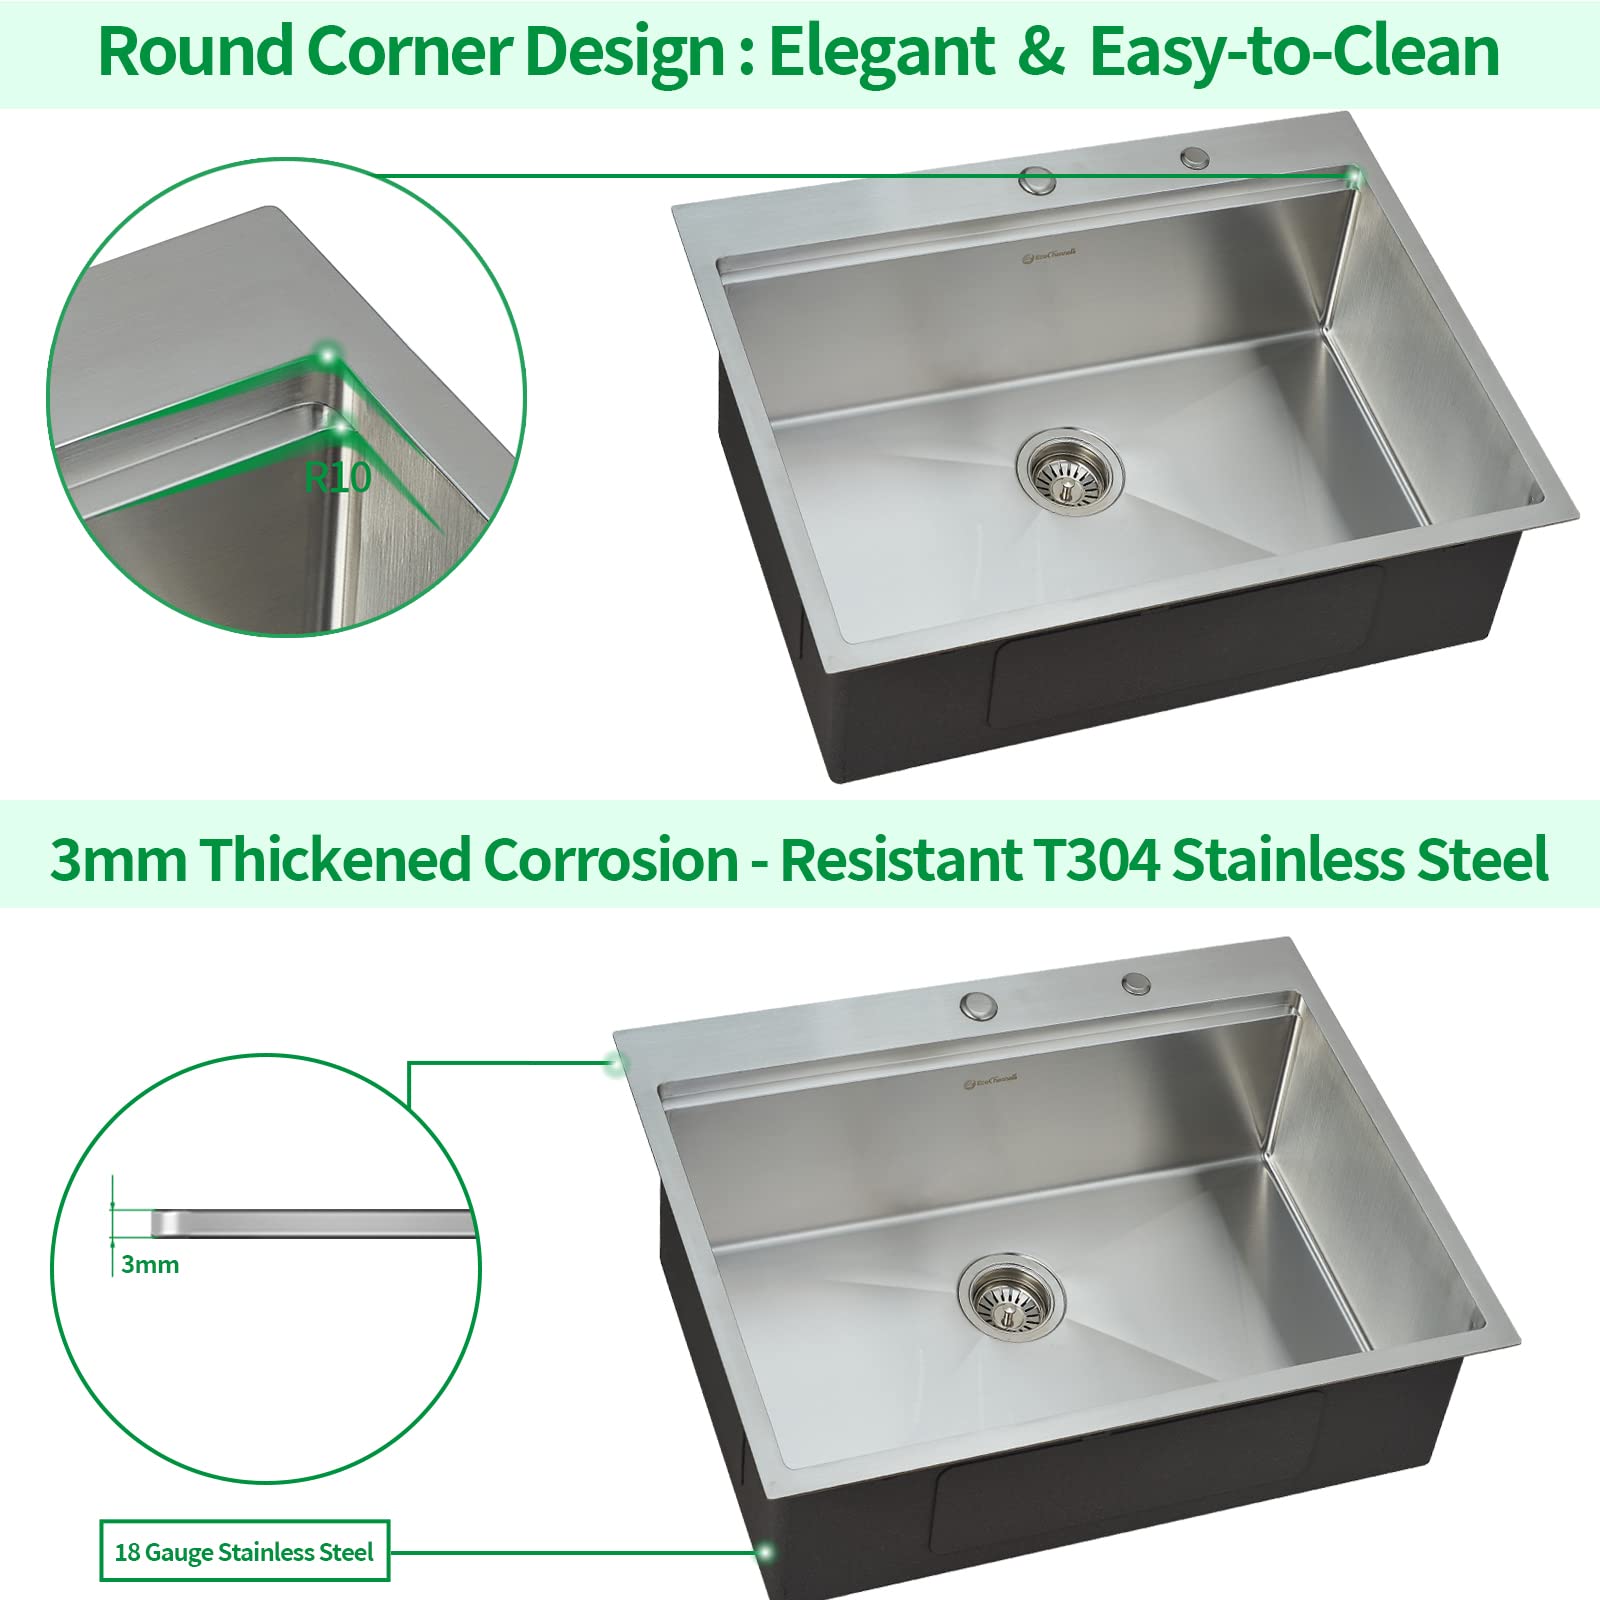 EcoChannels Kitchen Sink, 25 x 22 Inch Drop in Kitchen Sink Stainless Steel Topmount Kitchen Sink Workstation Sink Single Bowl